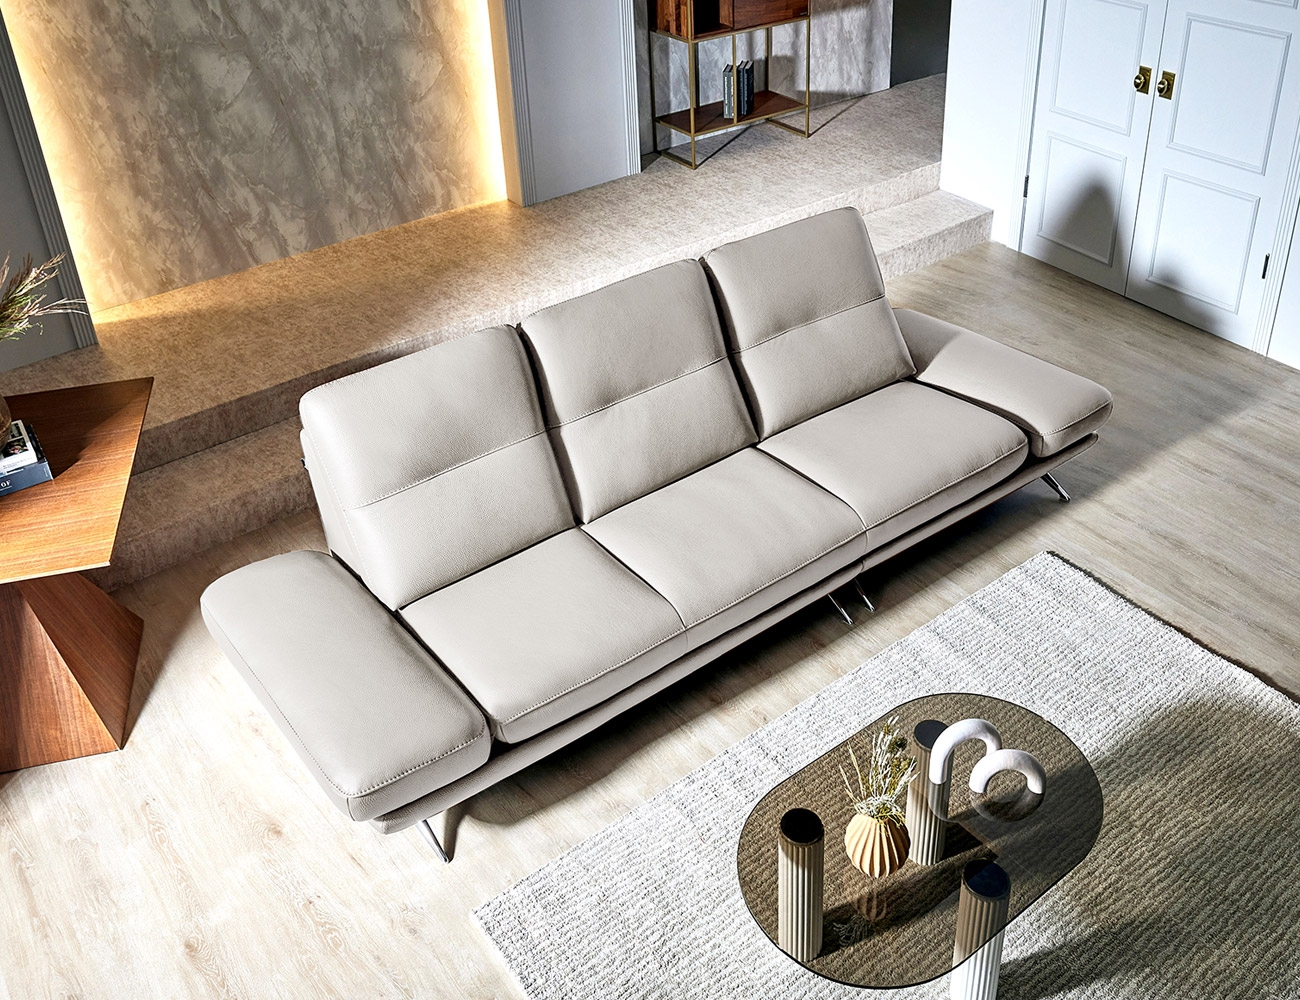 [healing sofa] 베니스II 3.5인 기능성 비텔로 통가죽 슈렁큰 천연면피 소가죽 소파+쿠션2개